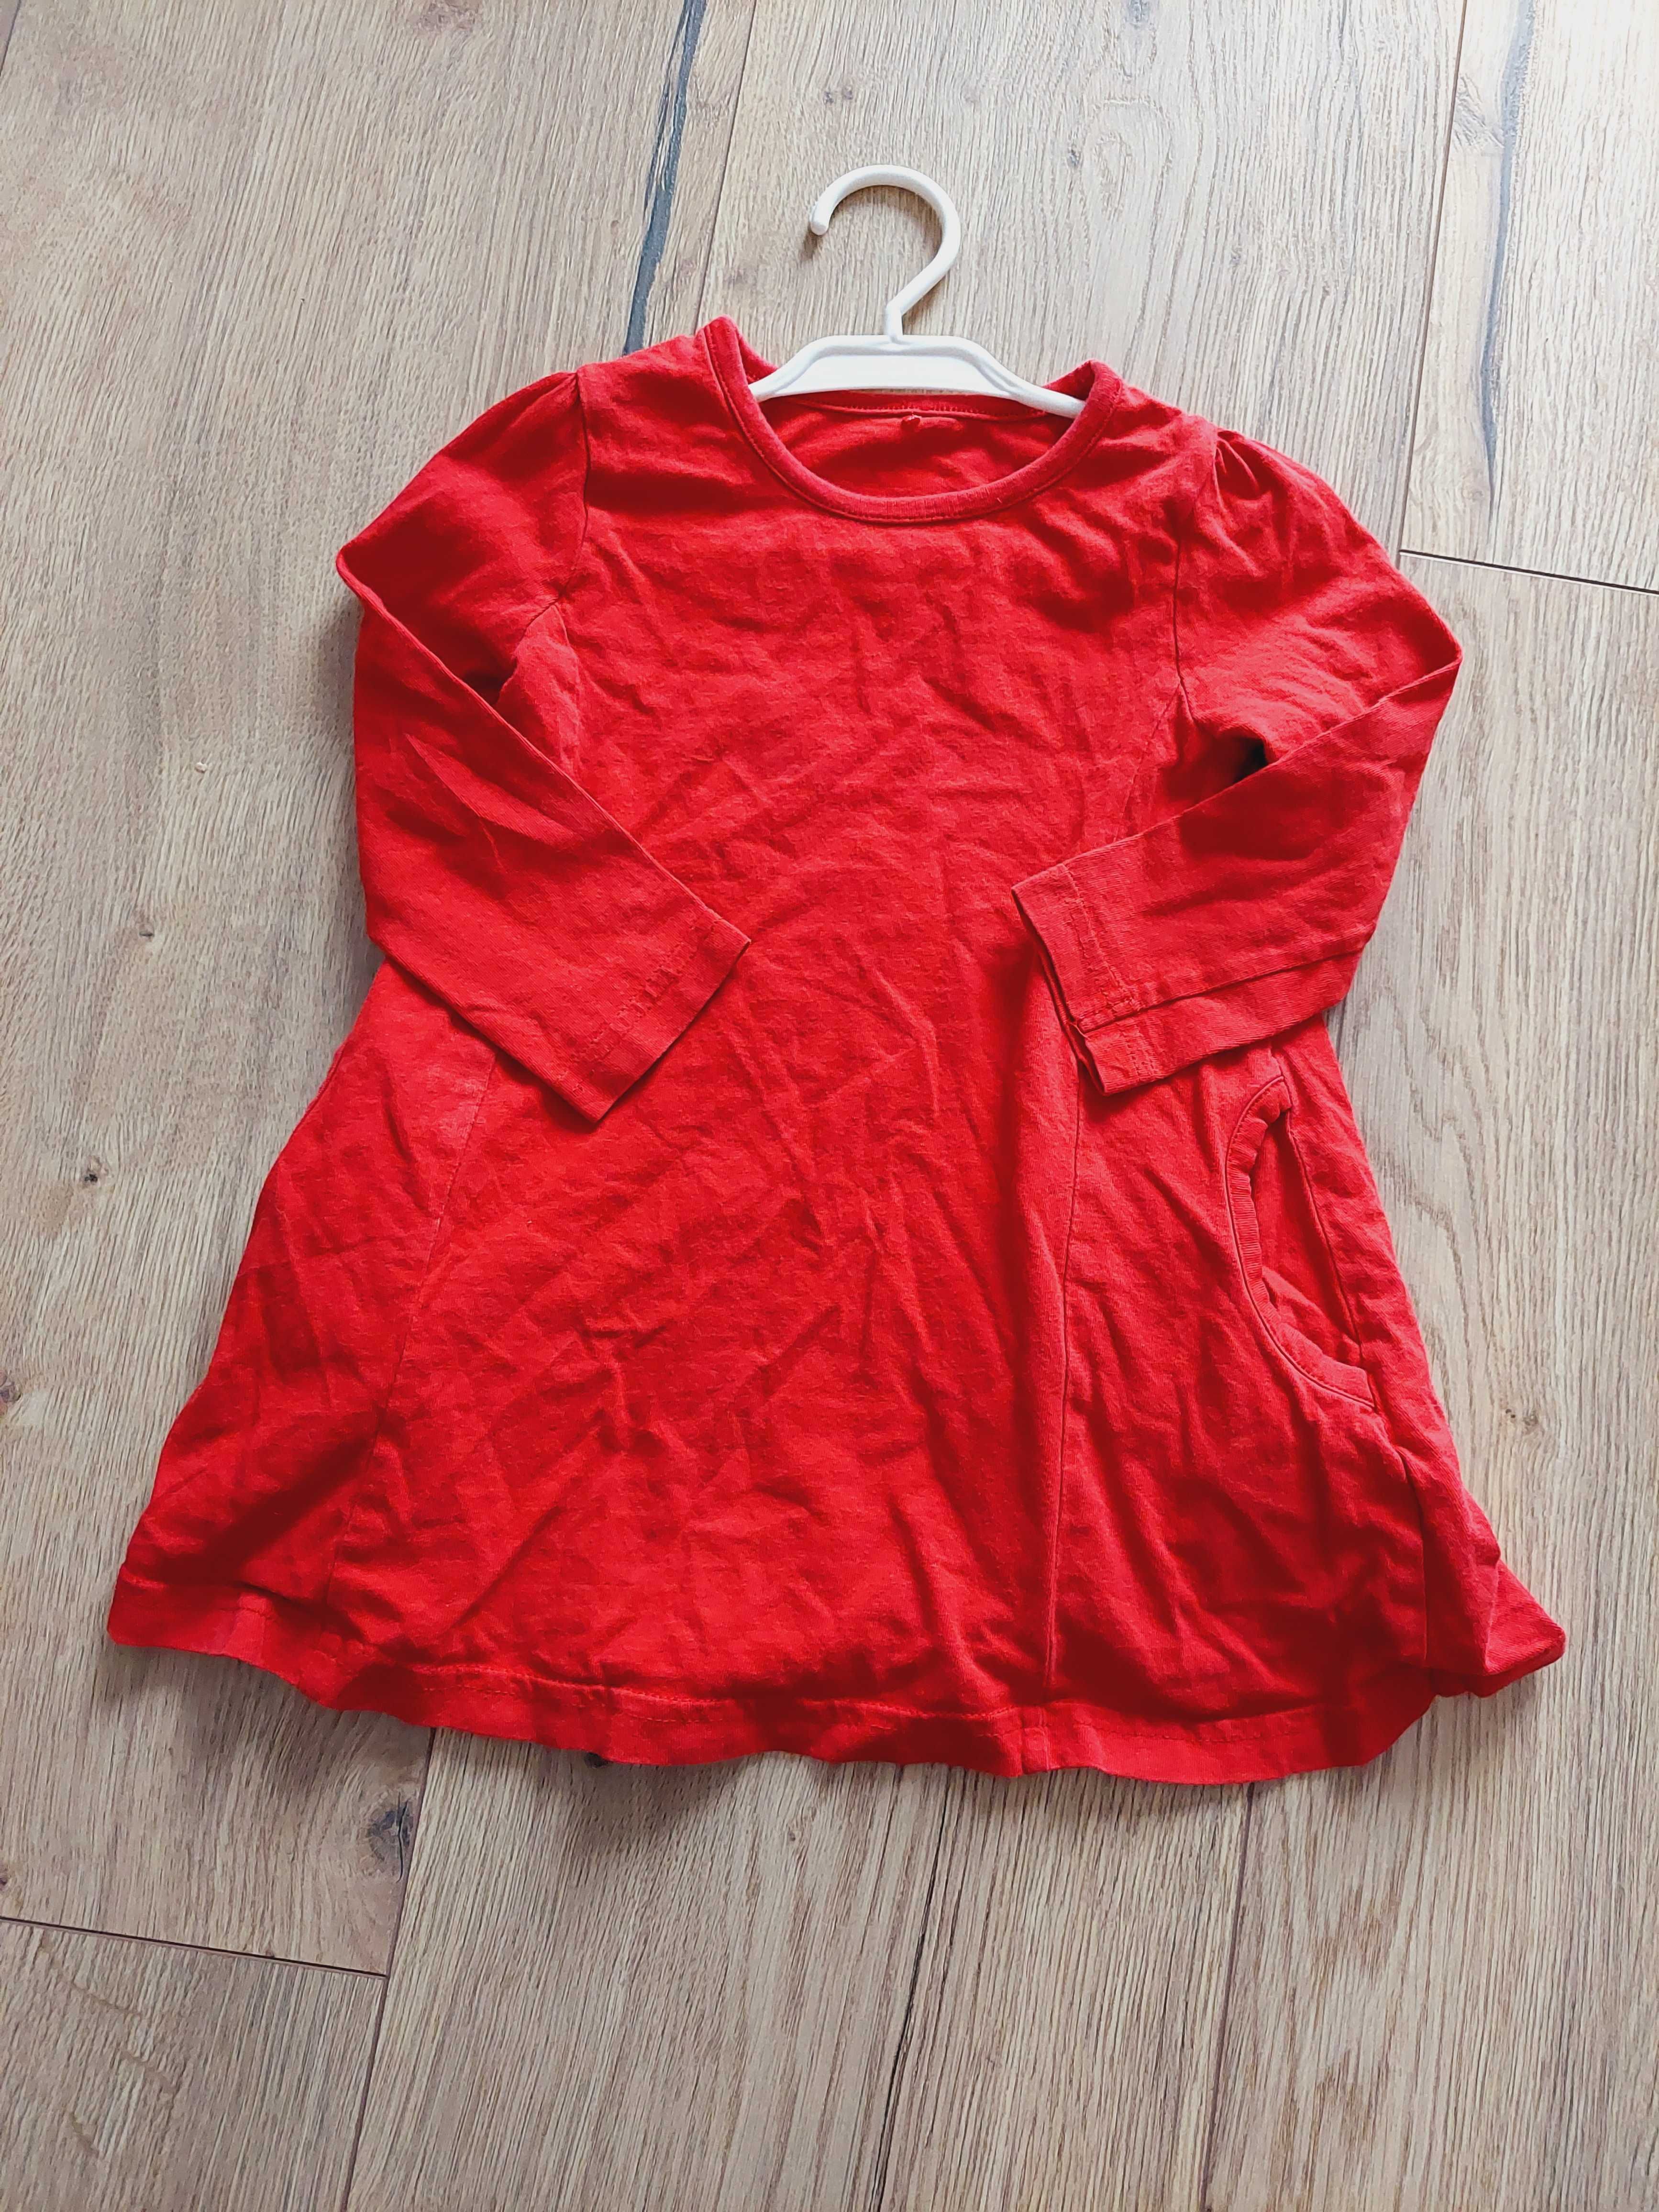 Sukienka czerwona z kieszonkami george 12-18m 80-86 cm